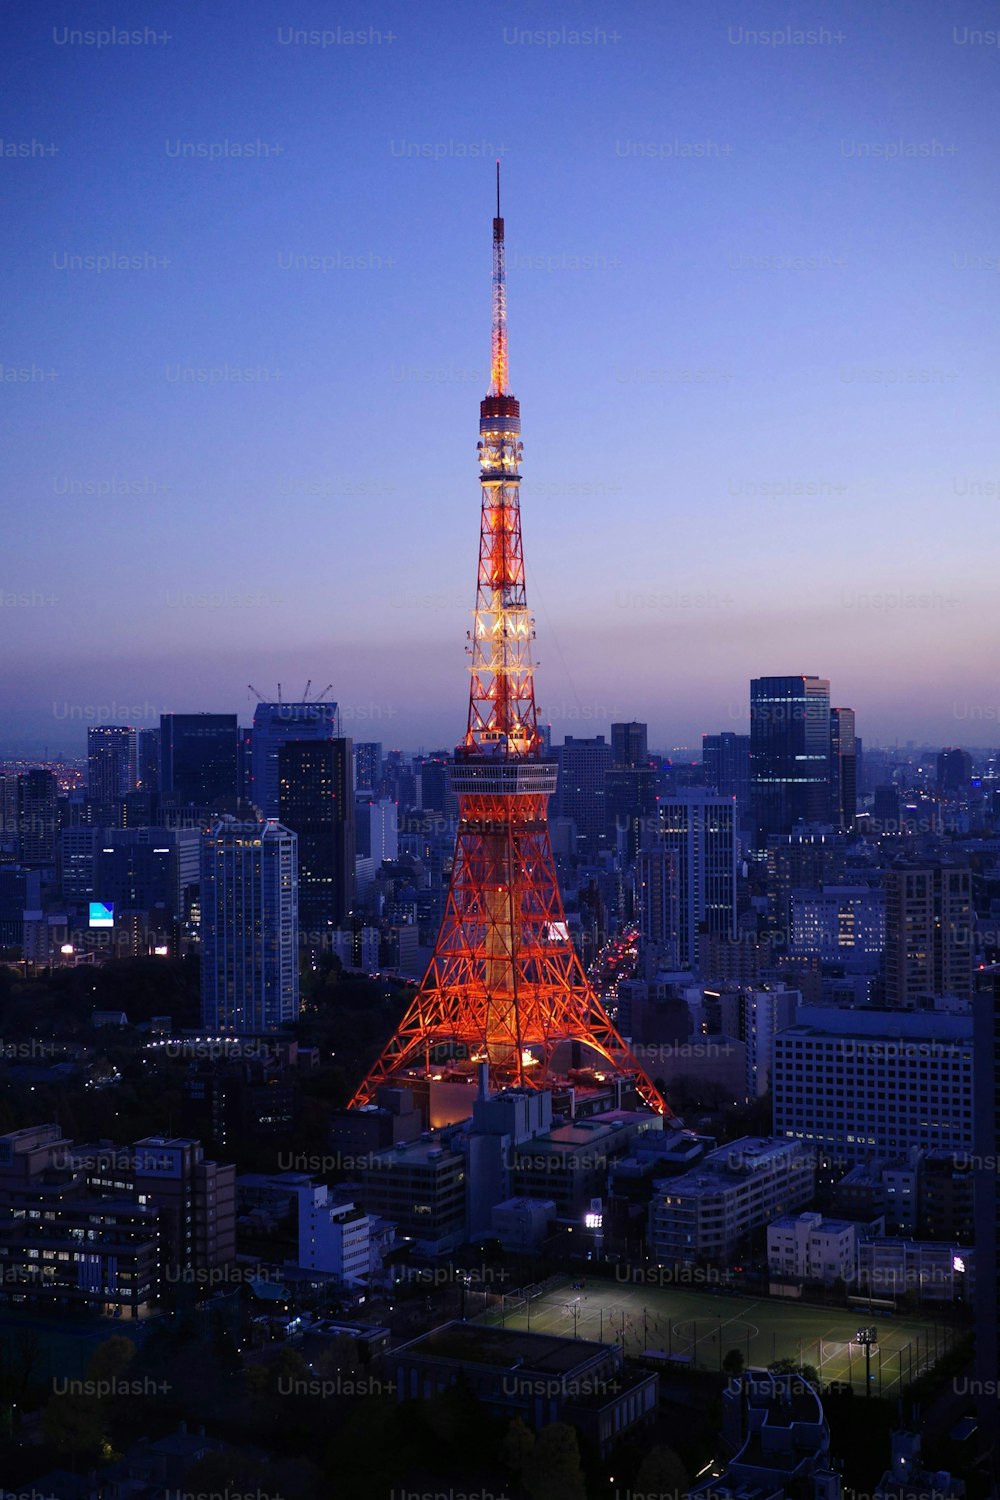 Dieses eindrucksvolle Bild von Tokios ikonischem roten Turm, der vor dem blauen Himmel leuchtet, ist perfekt für Ihr nächstes Stockfoto-Projekt